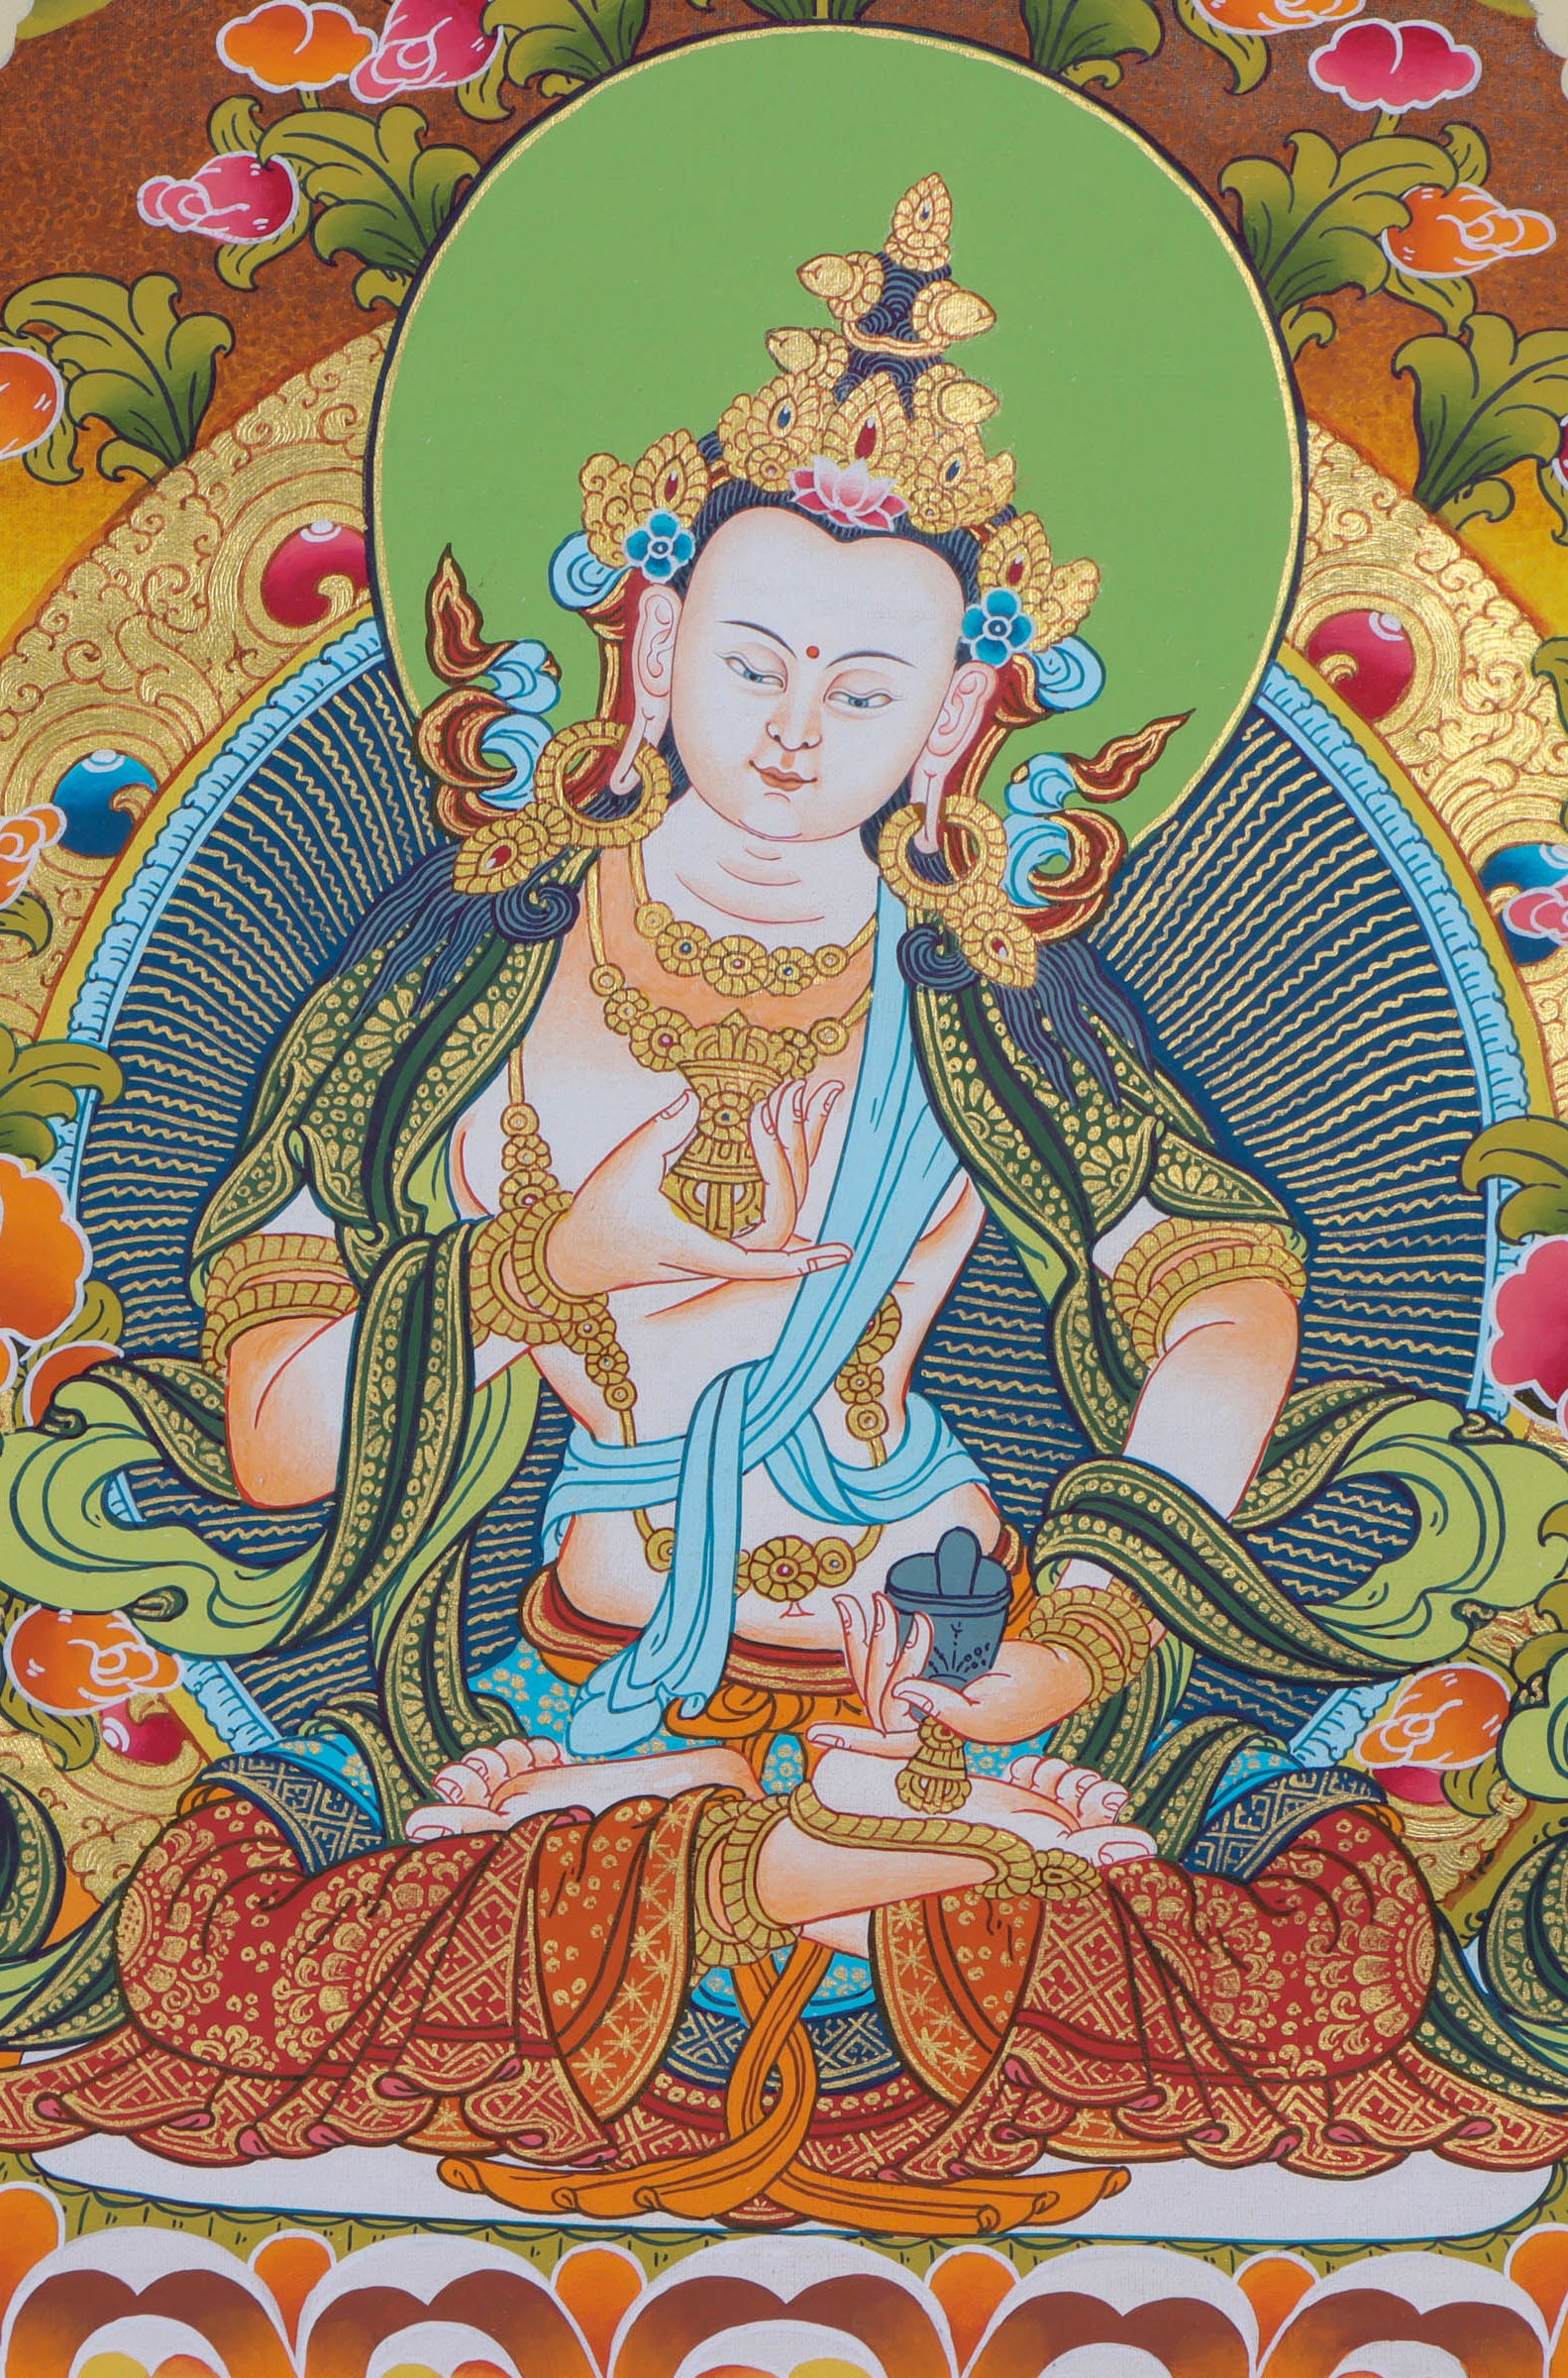 Vajrasattva Thangka of Purification- Lucky Thanka